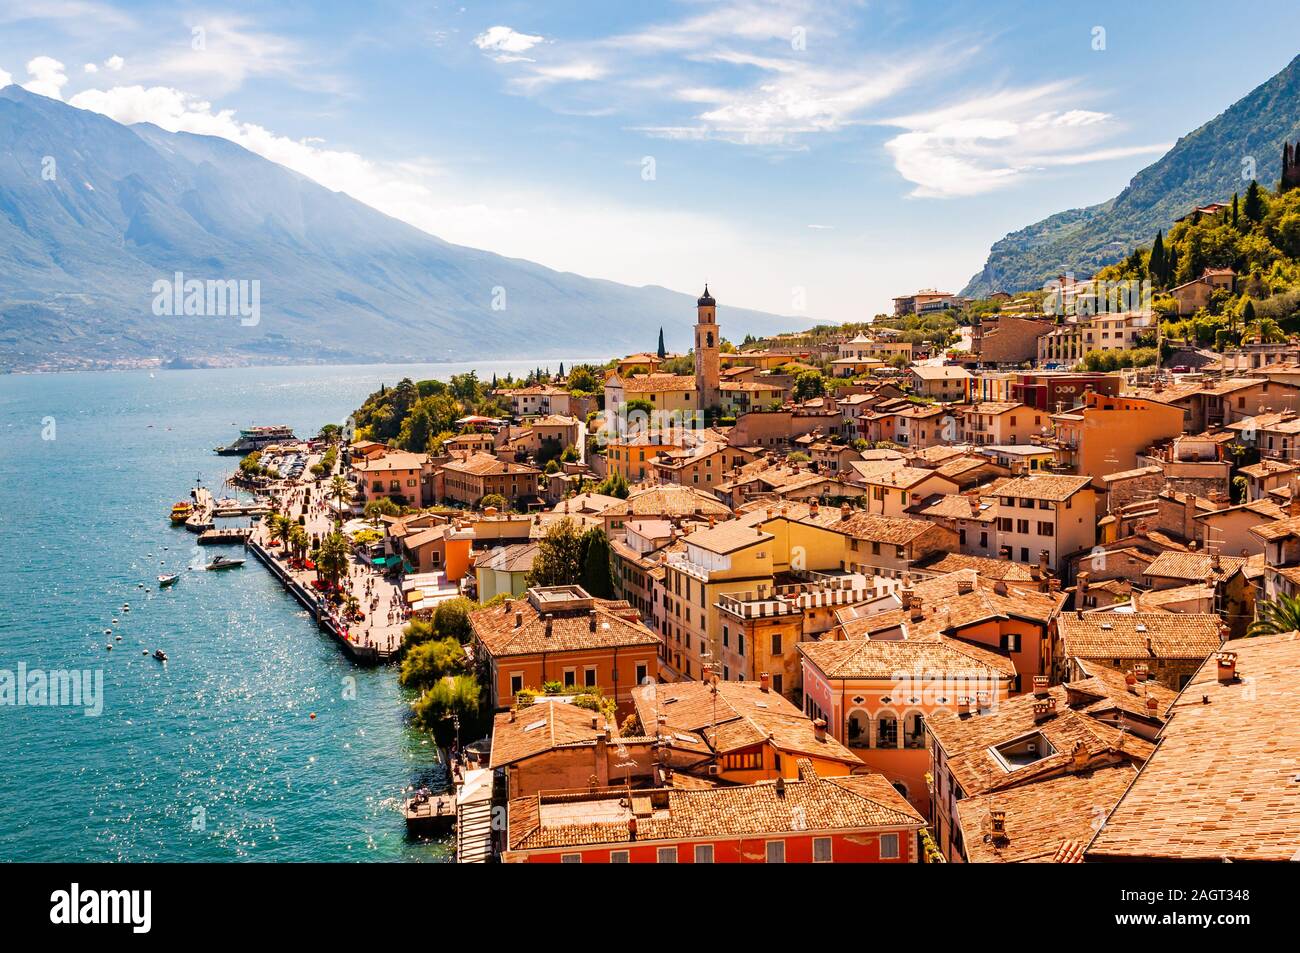 Limone Sul Garda stadtbild am Ufer des Gardasees in Norditalien von der malerischen Natur umgeben. Tolle italienische Städte Stockfoto